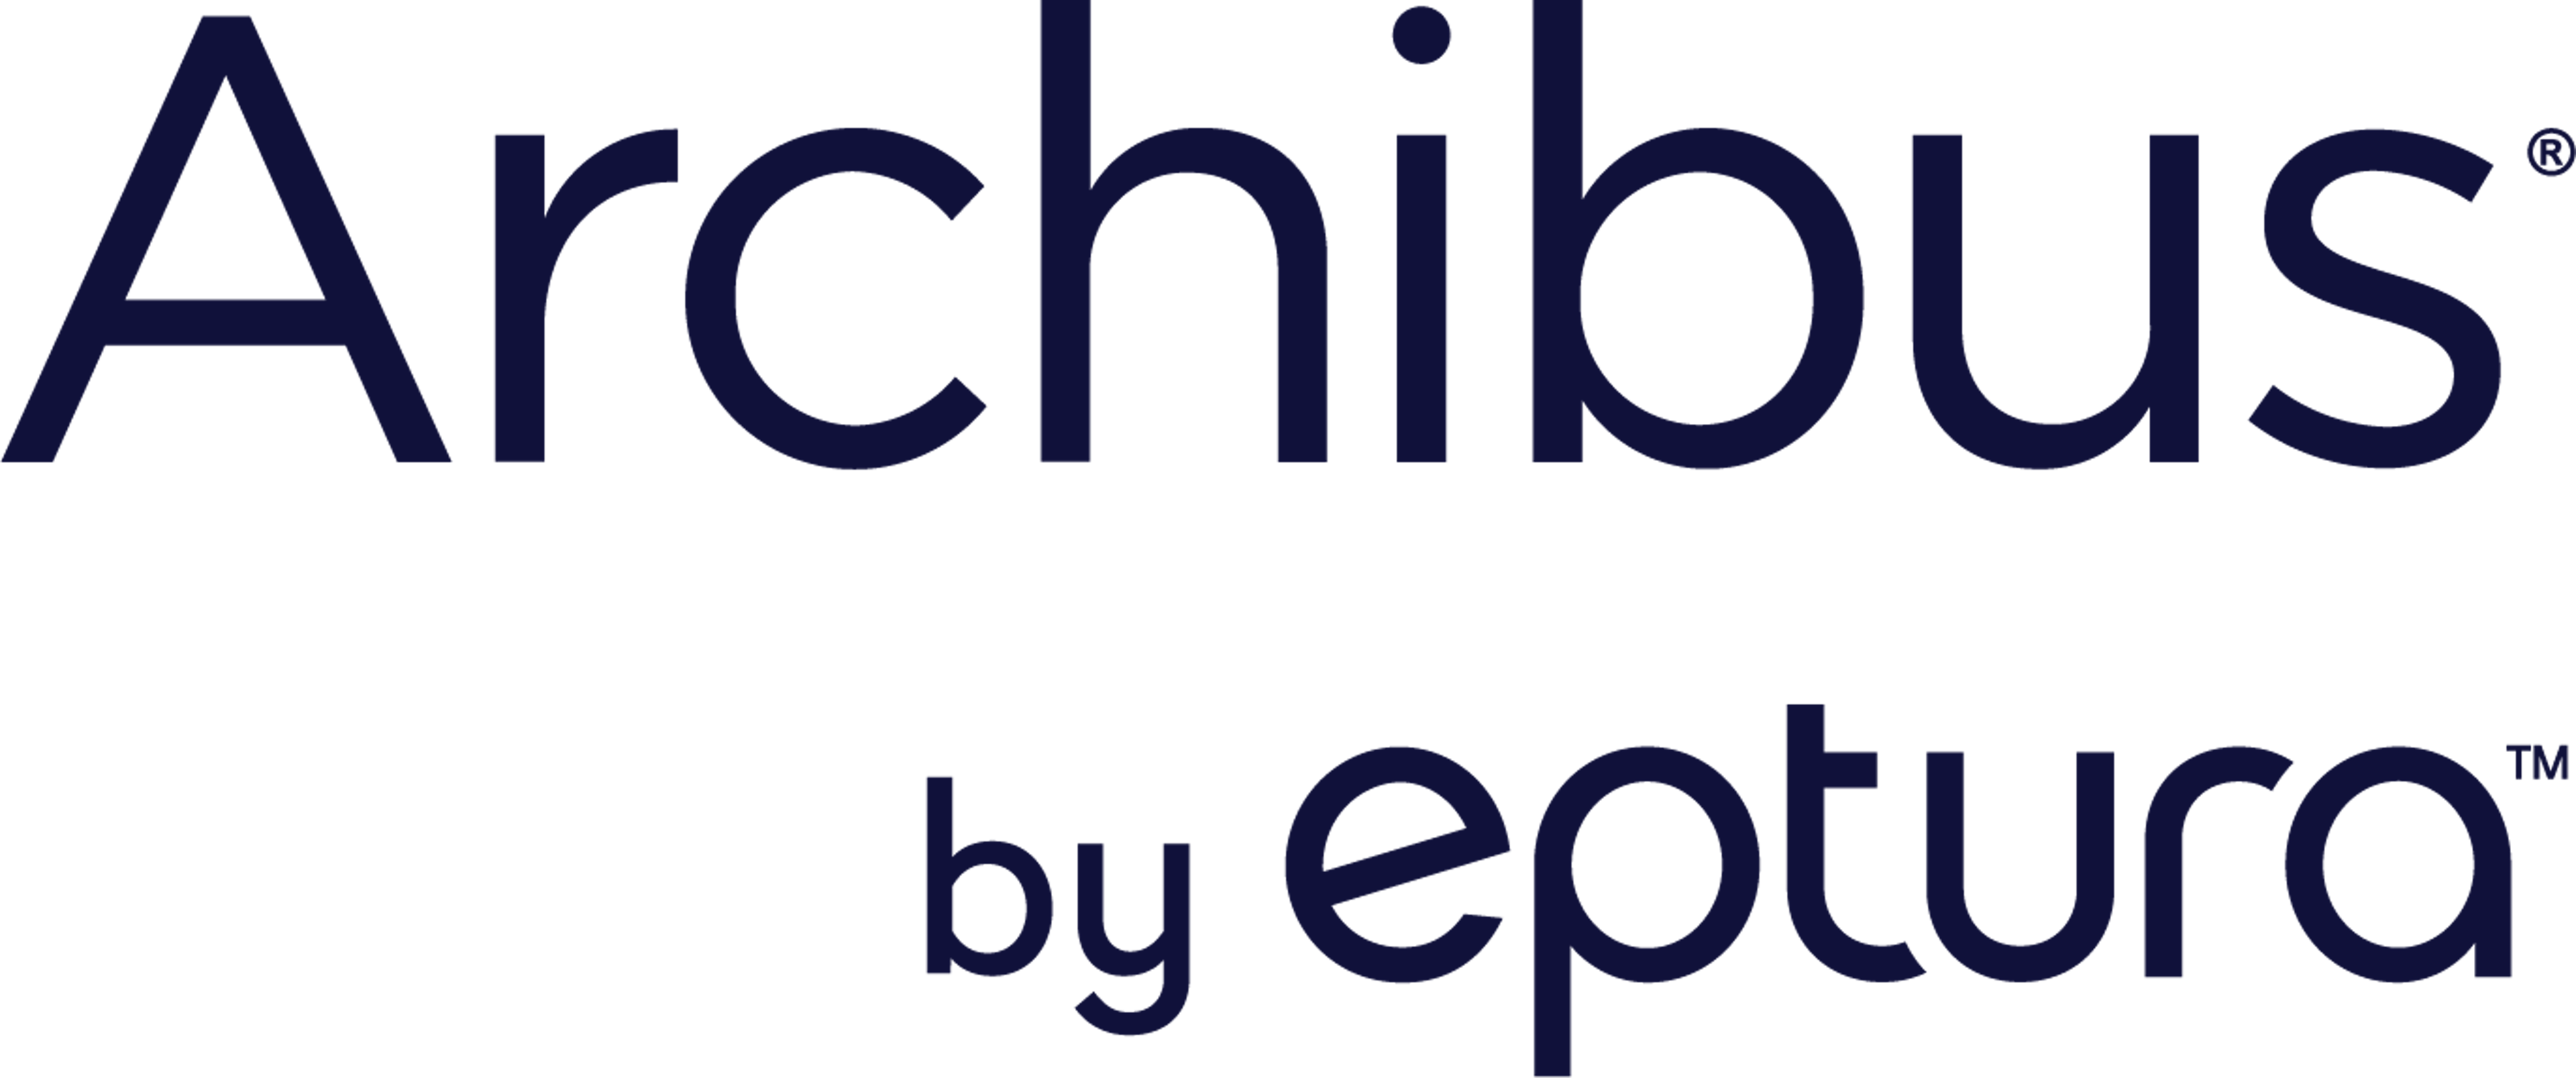 Archibus Logo